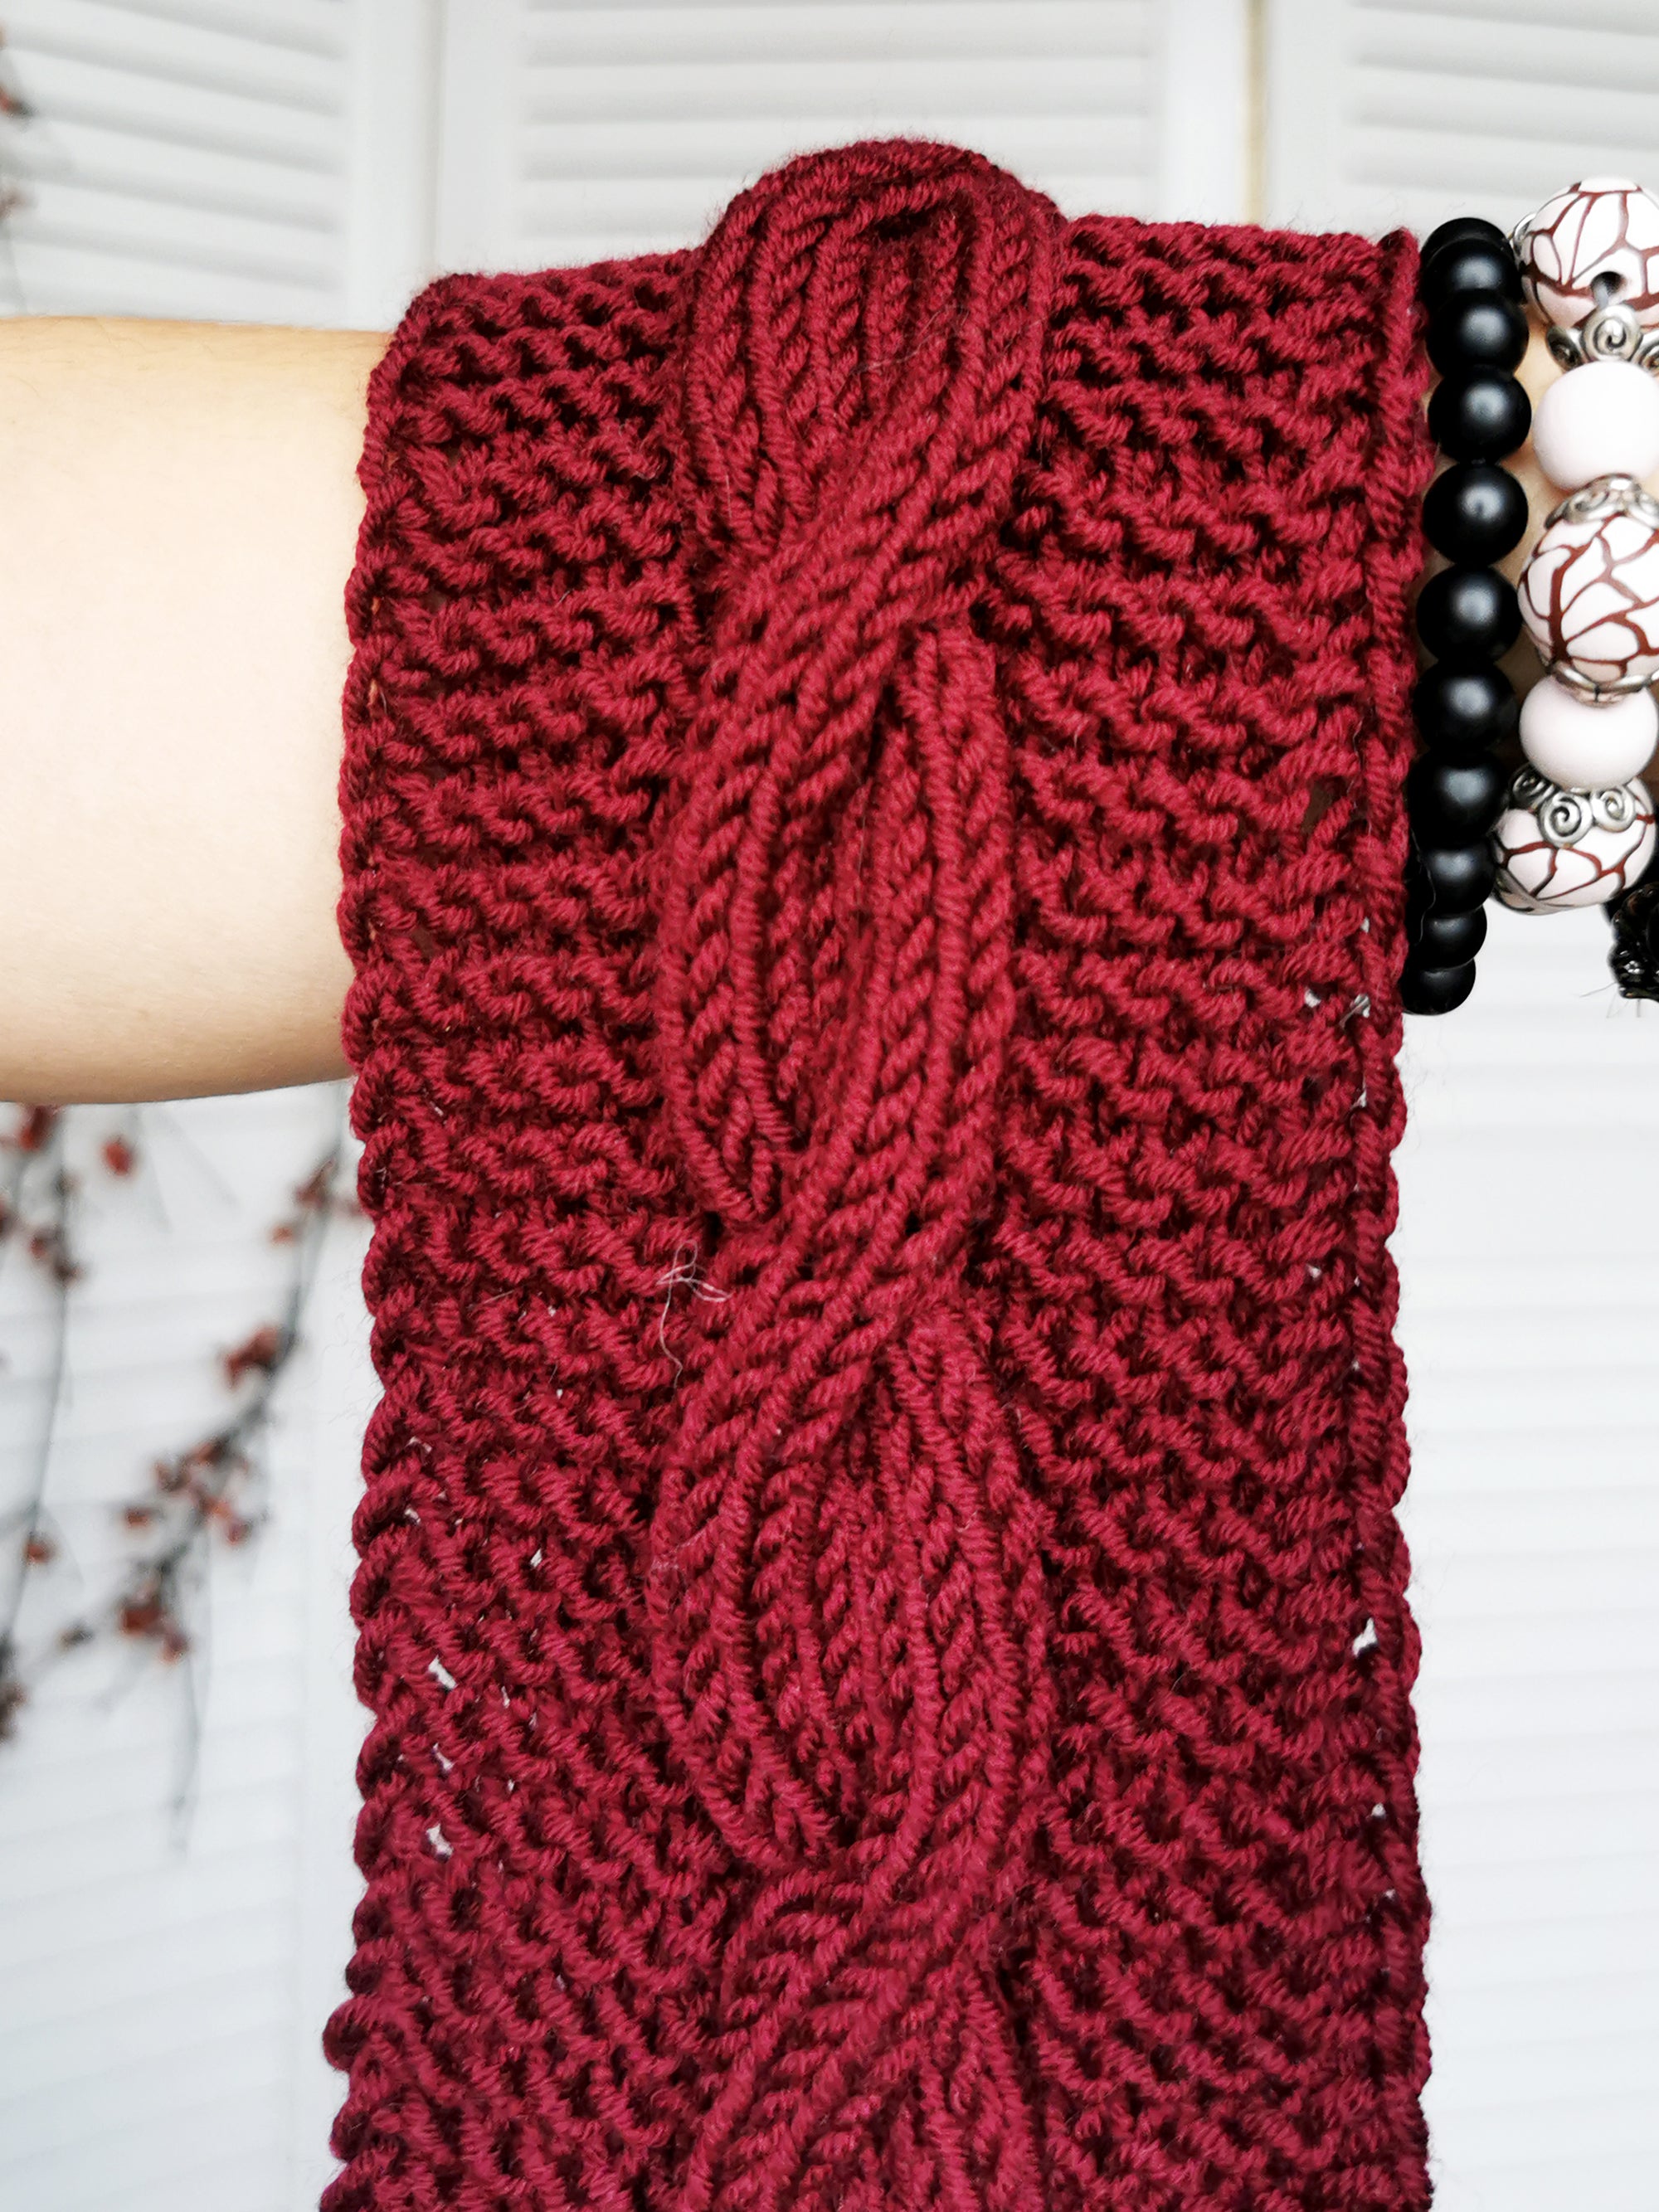 Merino wool handmade knitted winter headband in burgundy